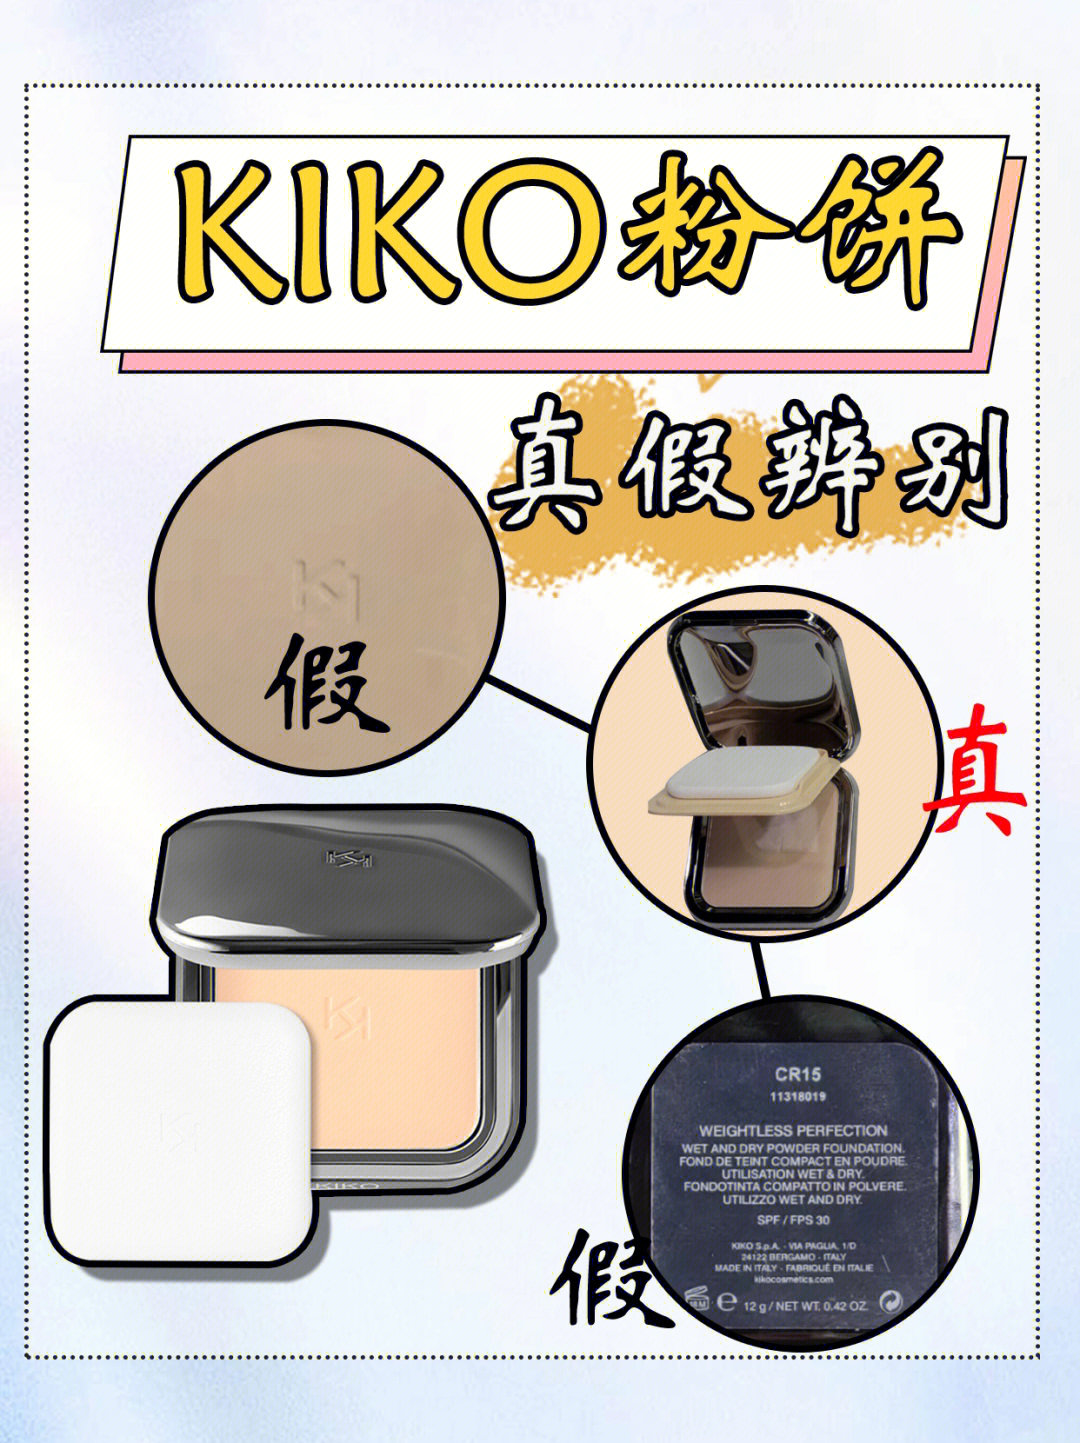 kiko粉饼口水味图片